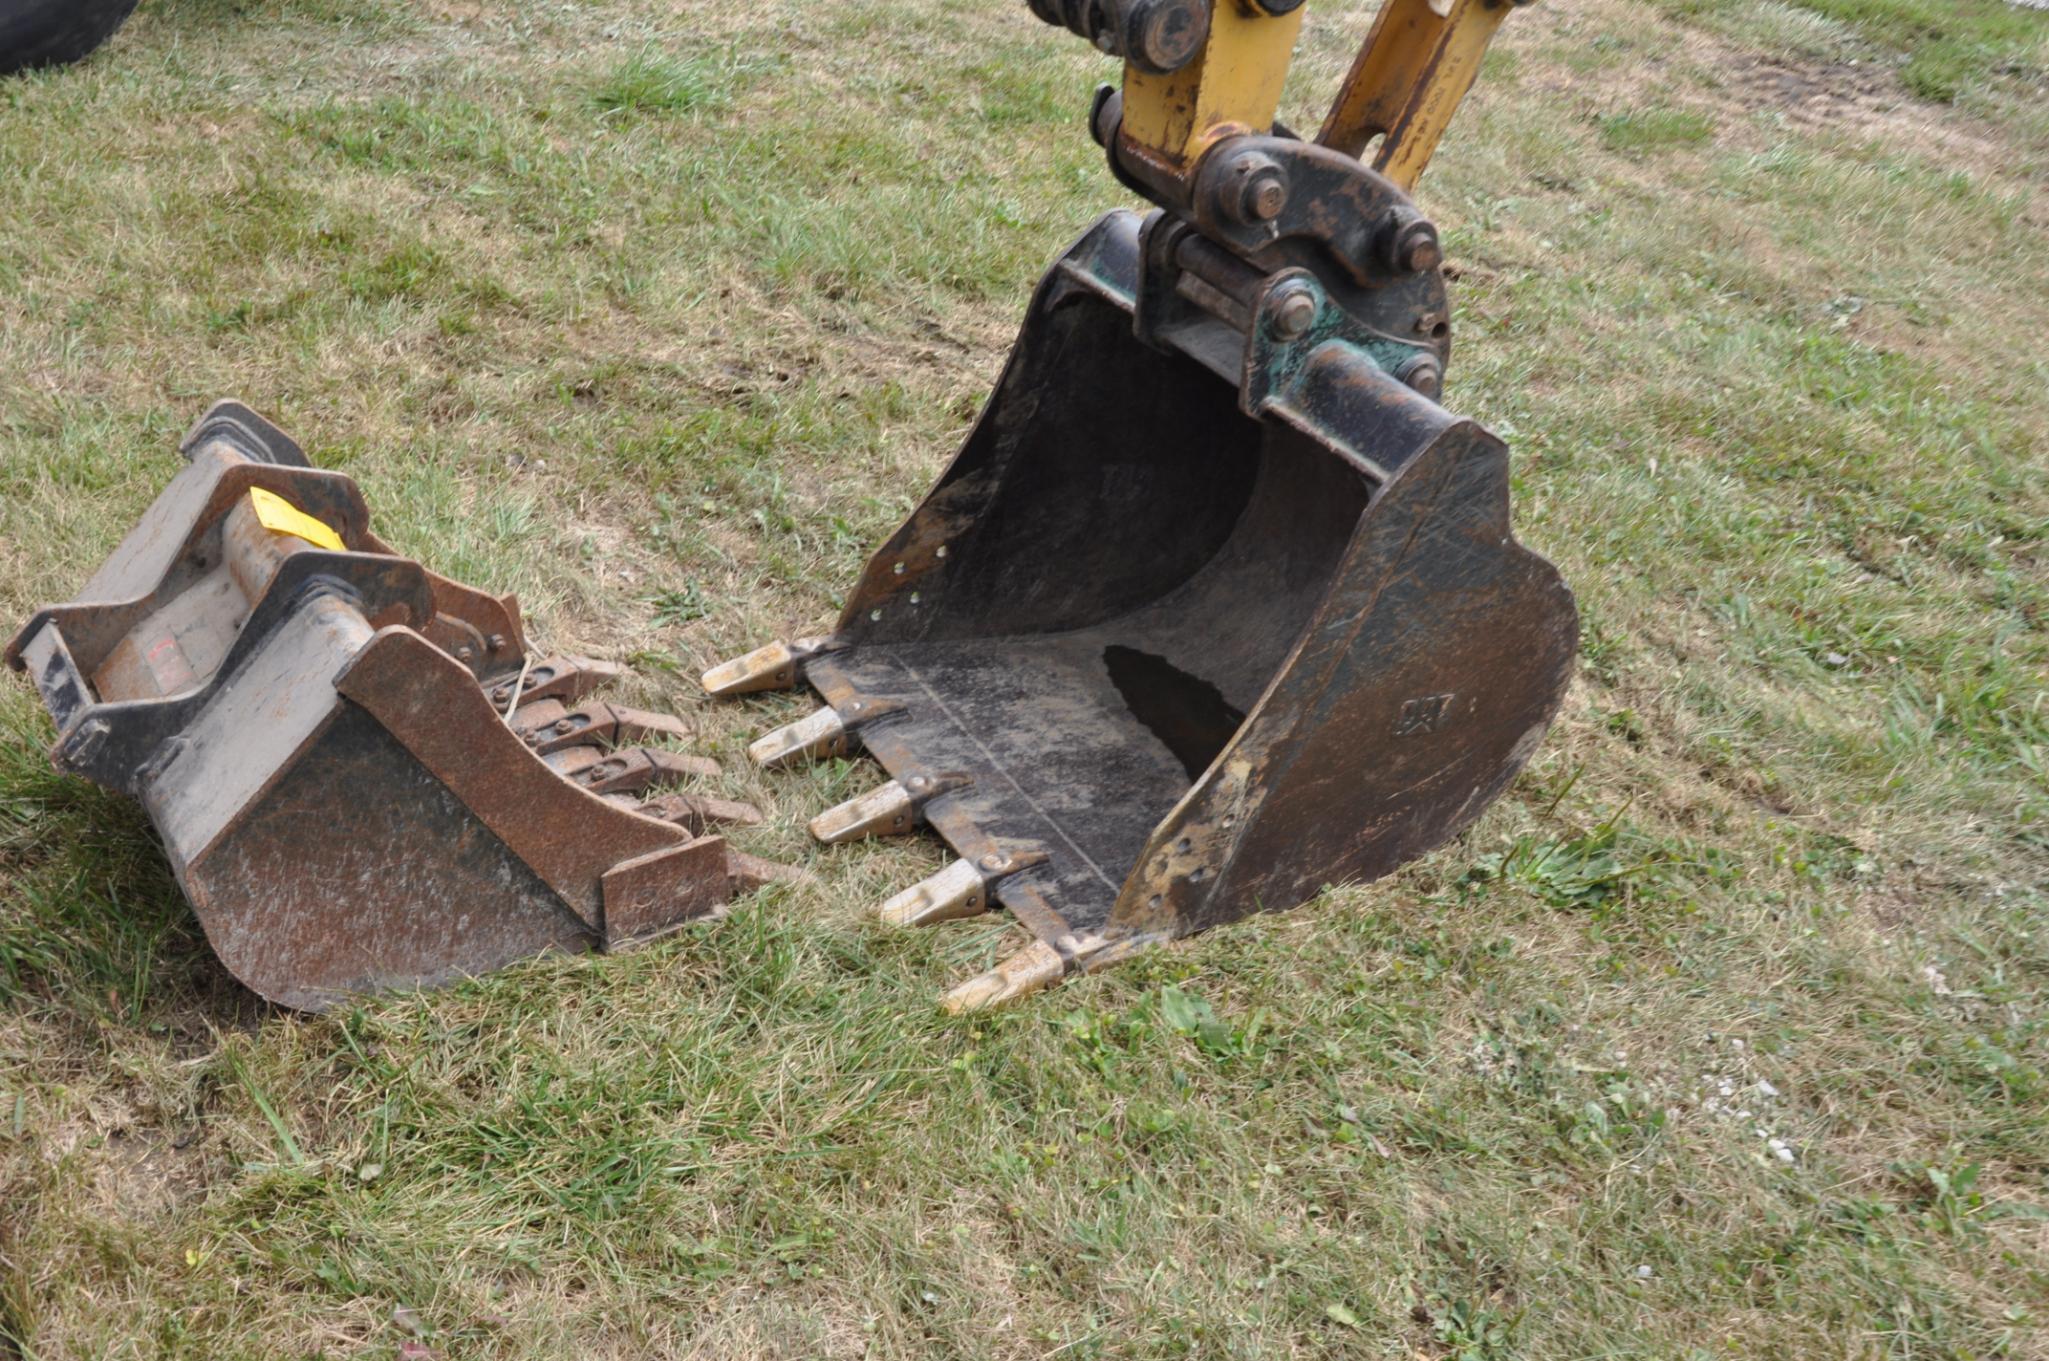 Cat 304C CR mini-excavator